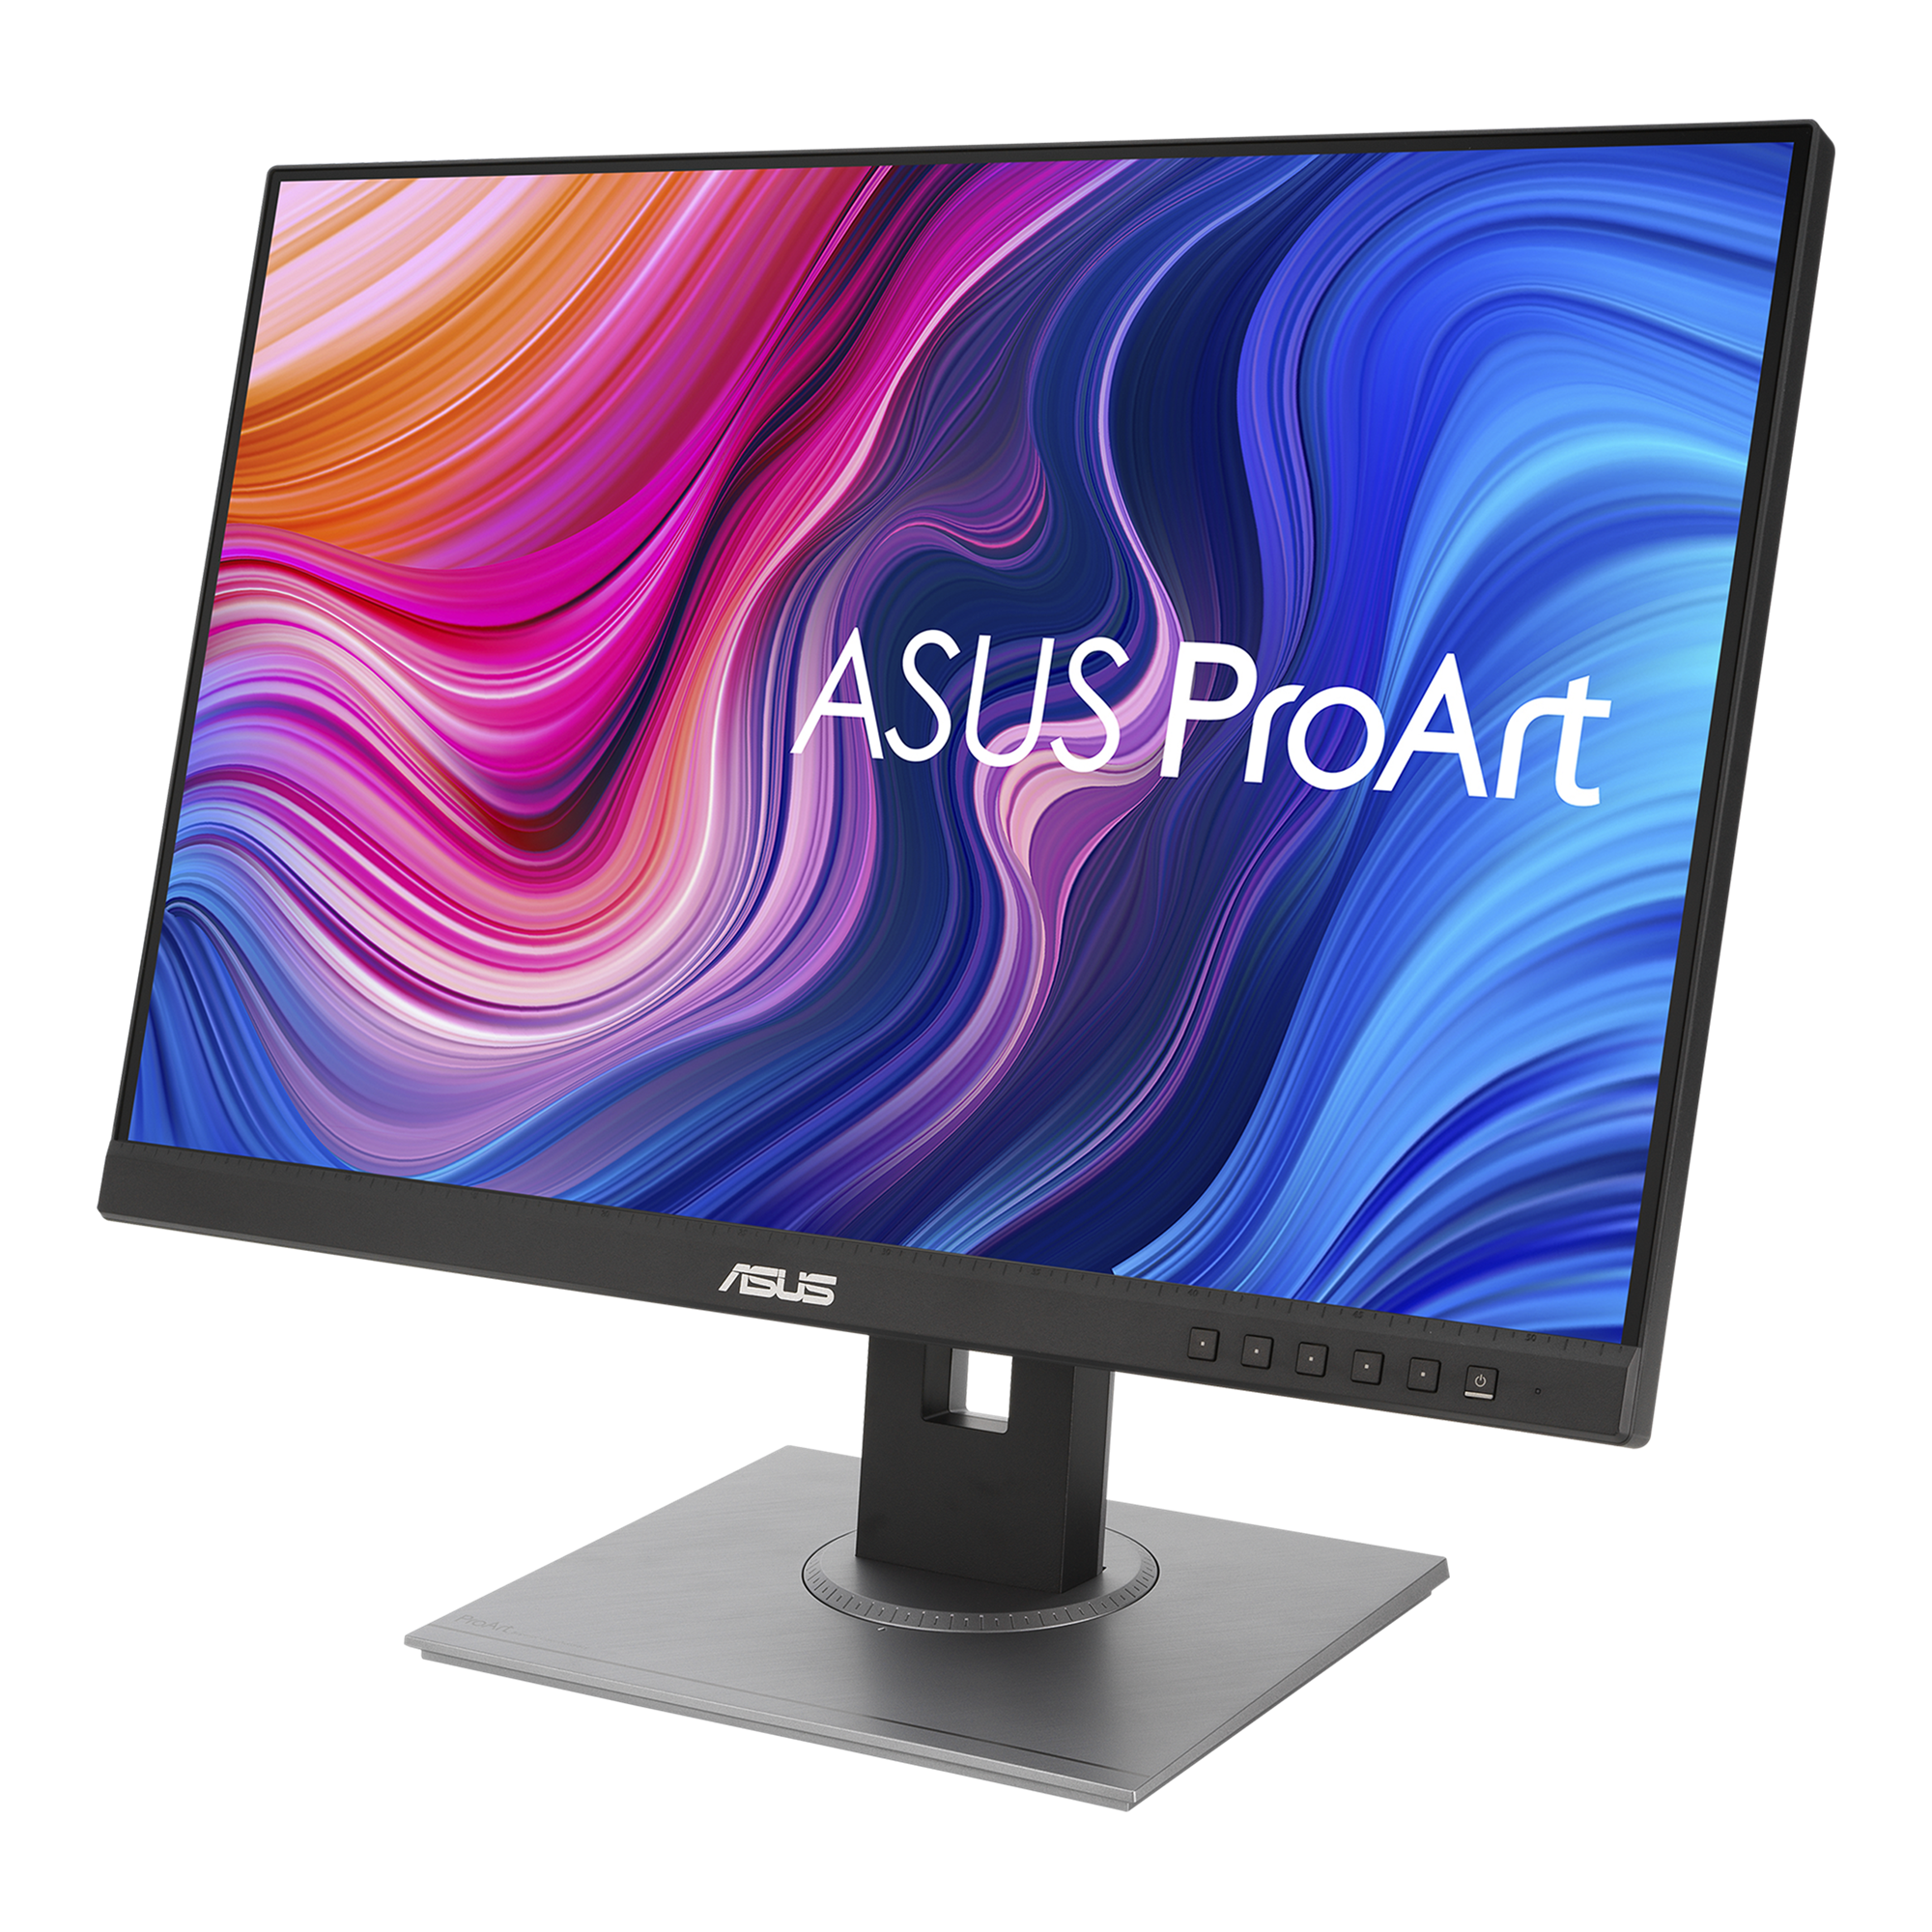 ASUS ProArt Display PA248QV 24.1” WUXGA (1920 x 1200) 16:10 Monitor, 100%  sRGB/Rec.709 ΔE 2, IPS, DisplayPort HDMI D-Sub, Calman Verified, Anti-gl 